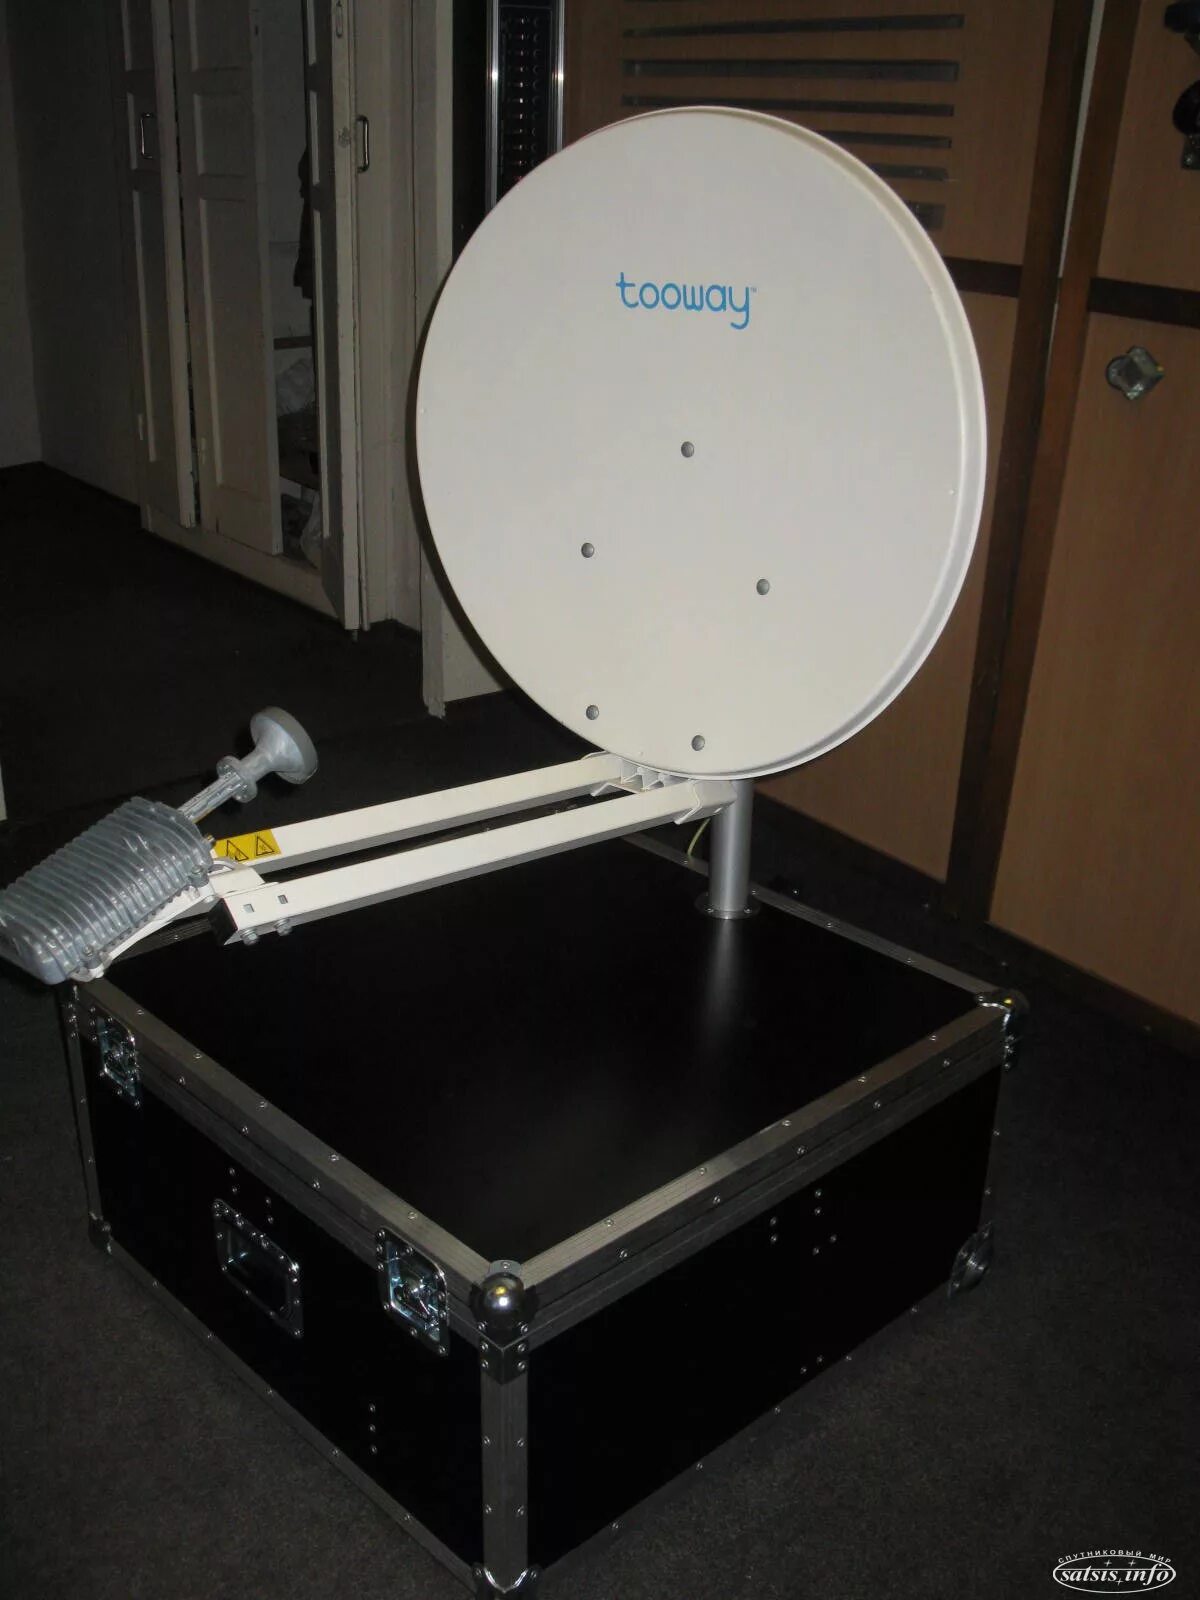 Комплект спутникового оборудования Gilat Gemini-i s2x. Спутниковое оборудование Comtech lpodrko-5. TF SATMOB спутниковый ресивер. Спутниковая тарелка для интернета.